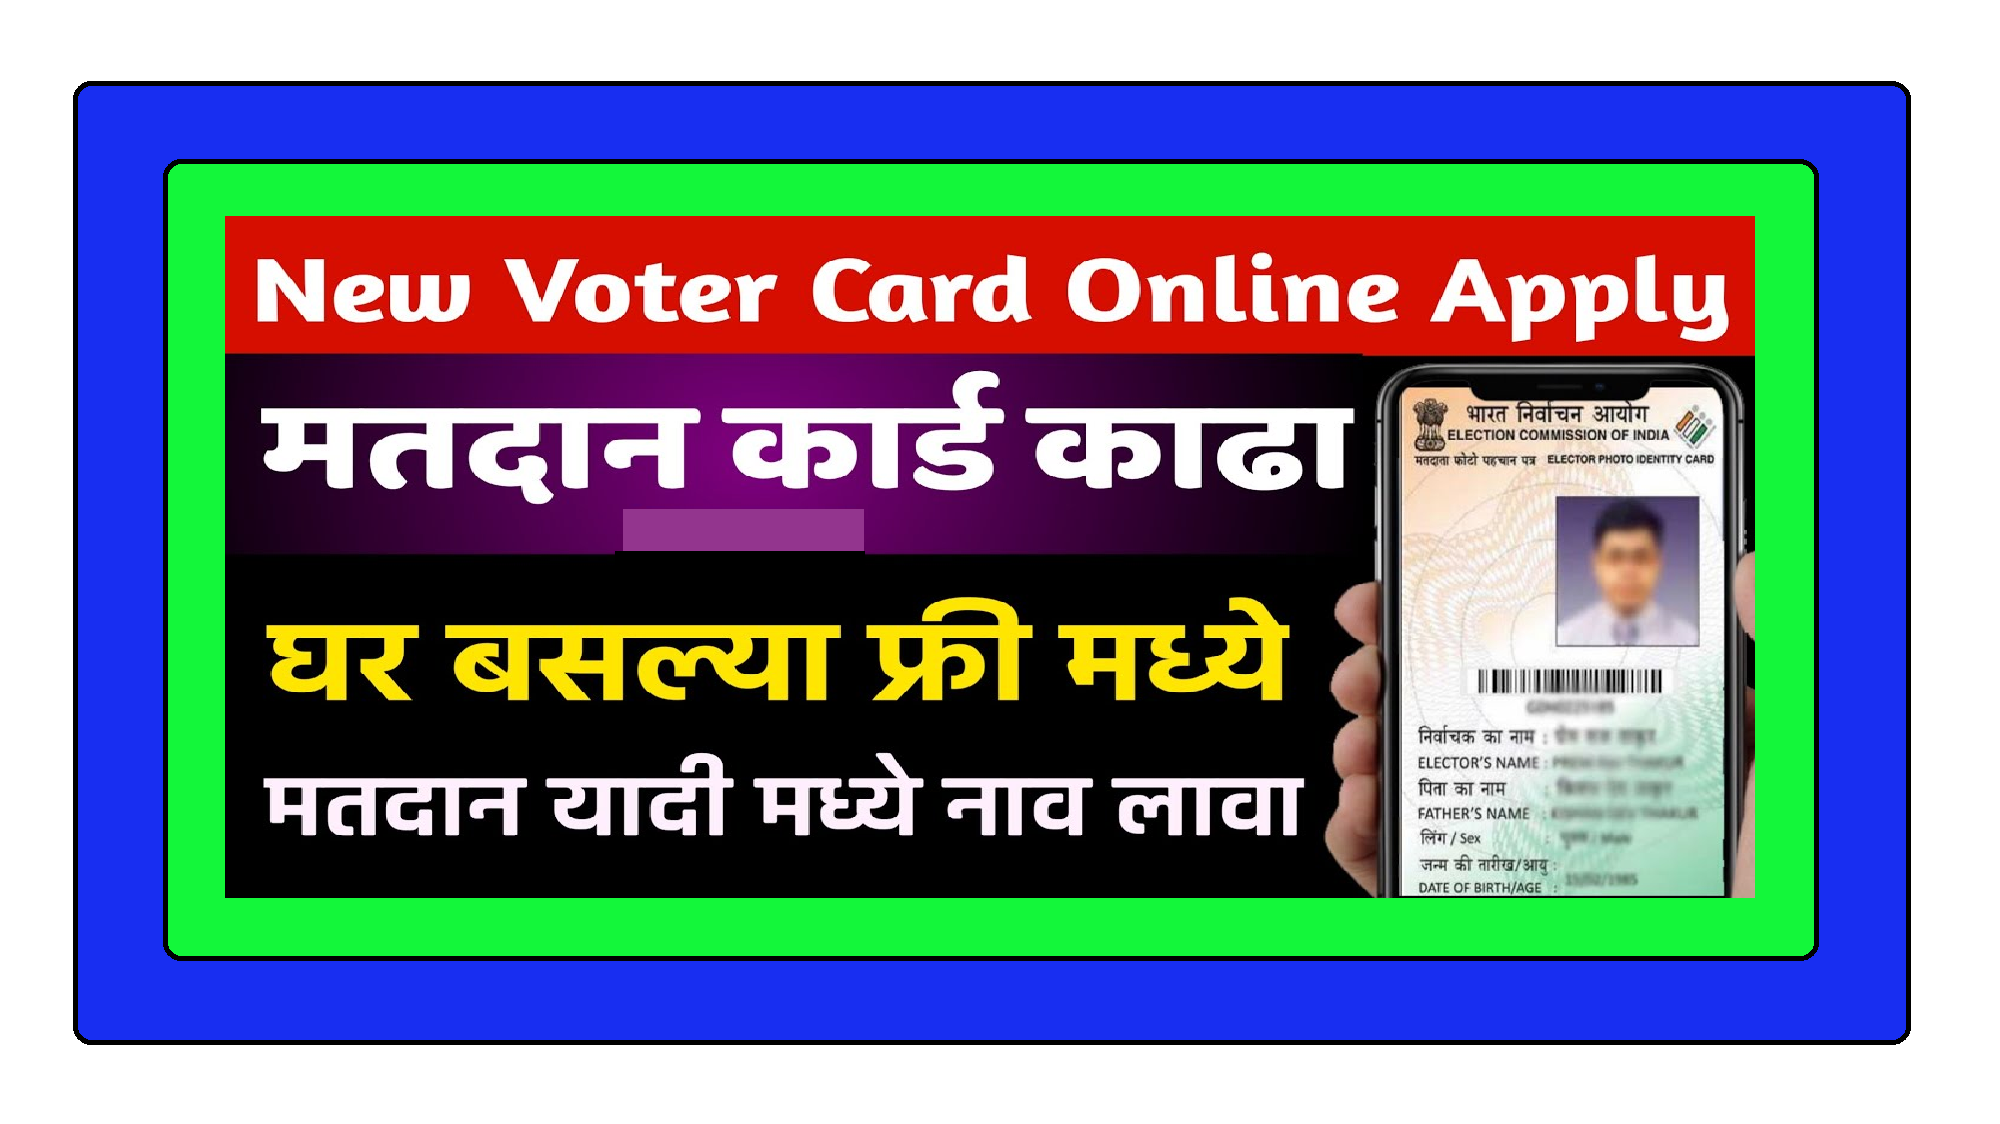 घर बसल्या फ्री ऑनलाईन मतदान कार्ड काढा ।। मतदार यादी मध्ये देखील नाव नोंदवून घ्या ।। जाणून घ्या संपूर्ण प्रक्रिया या लेखातून !